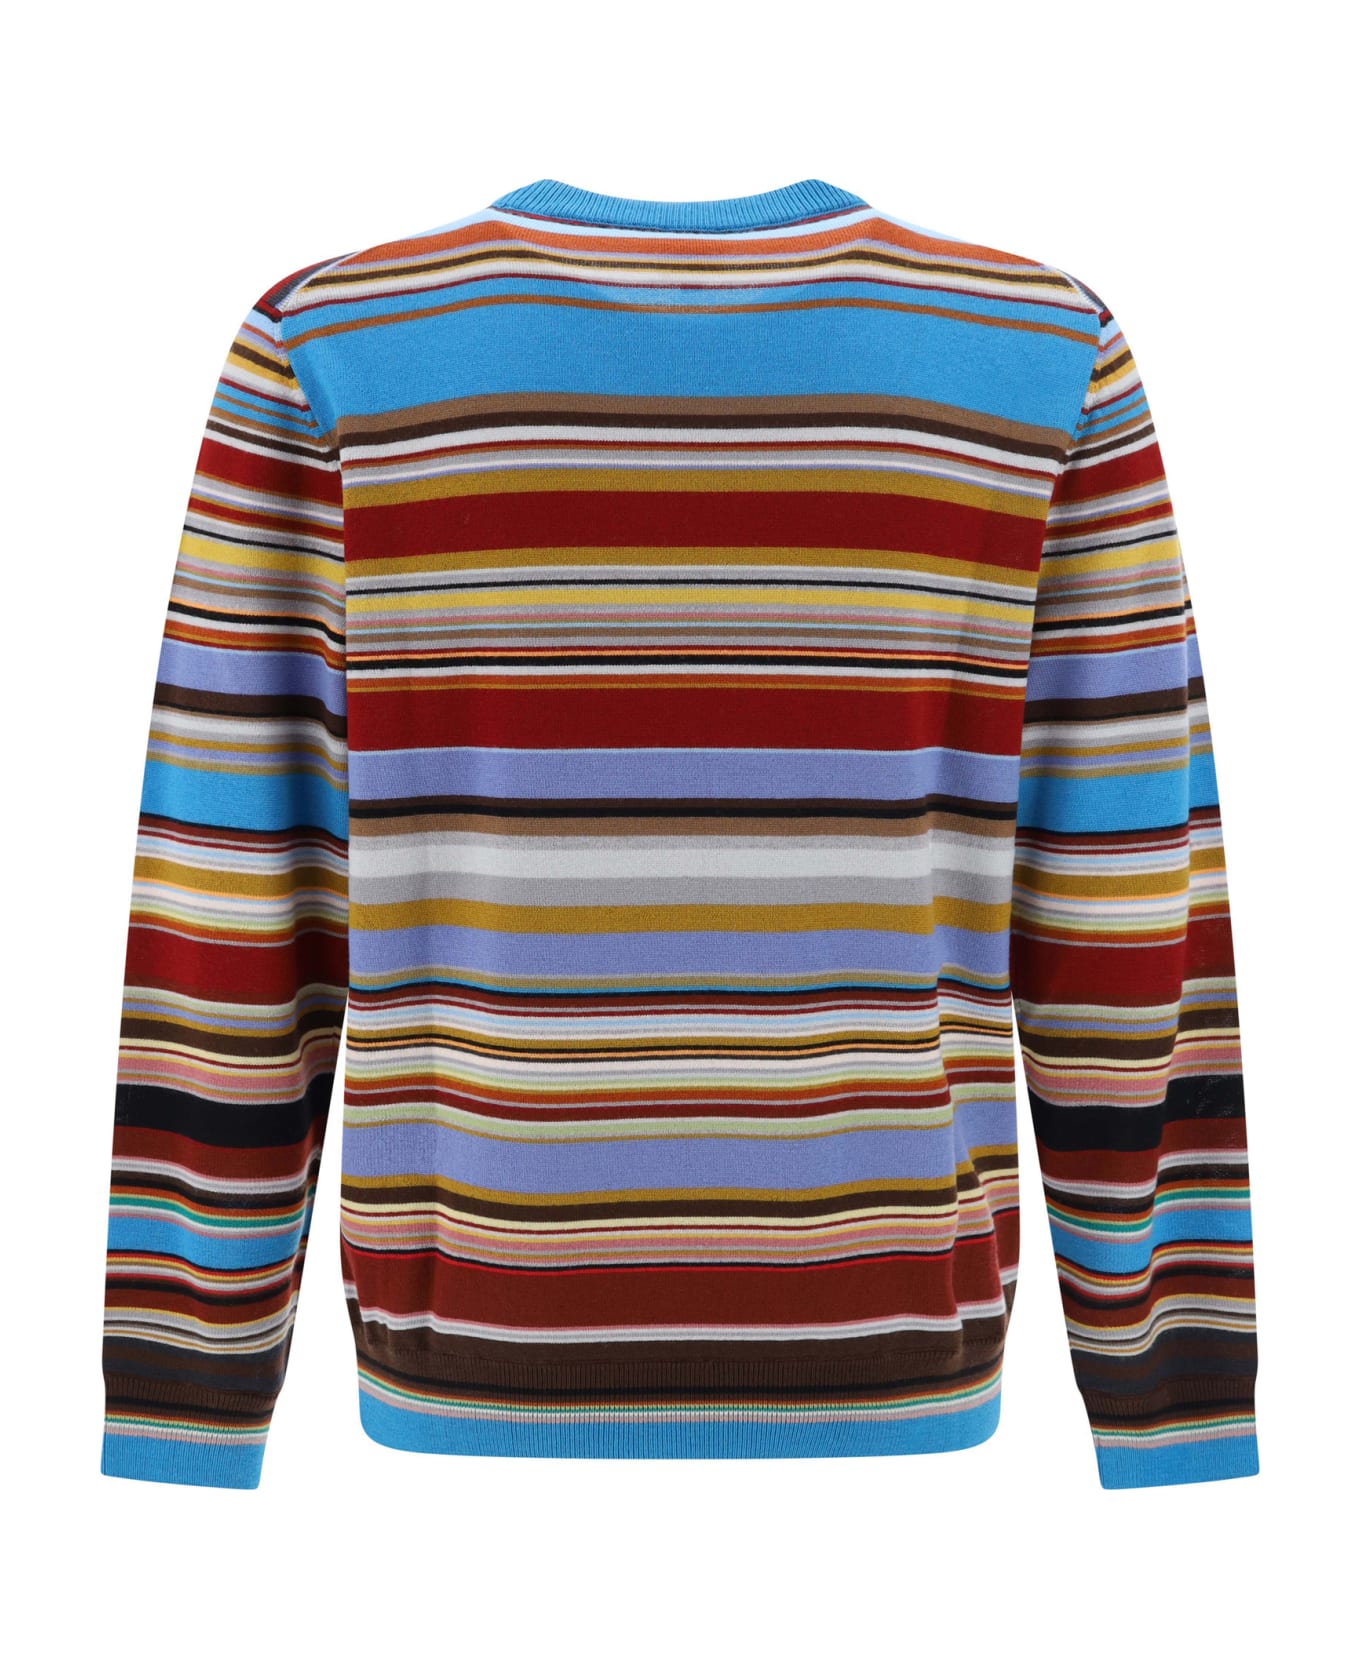 Paul Smith Sweater - Multi